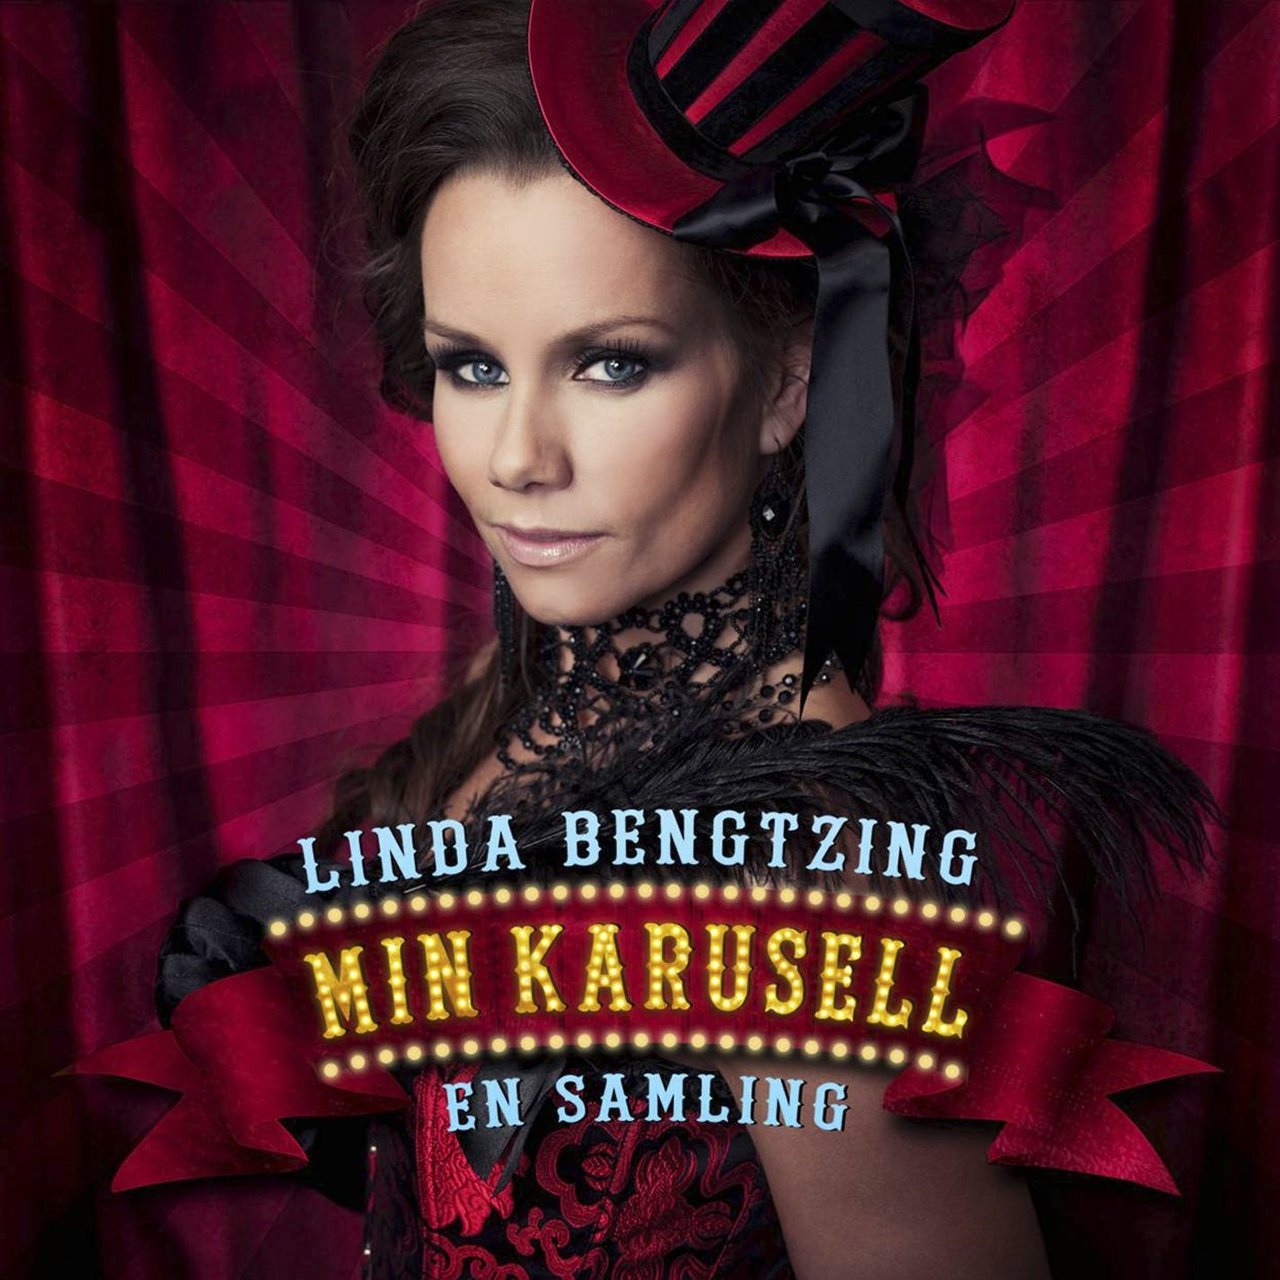 Linda Bengtzing Min karusell - En samling cover artwork